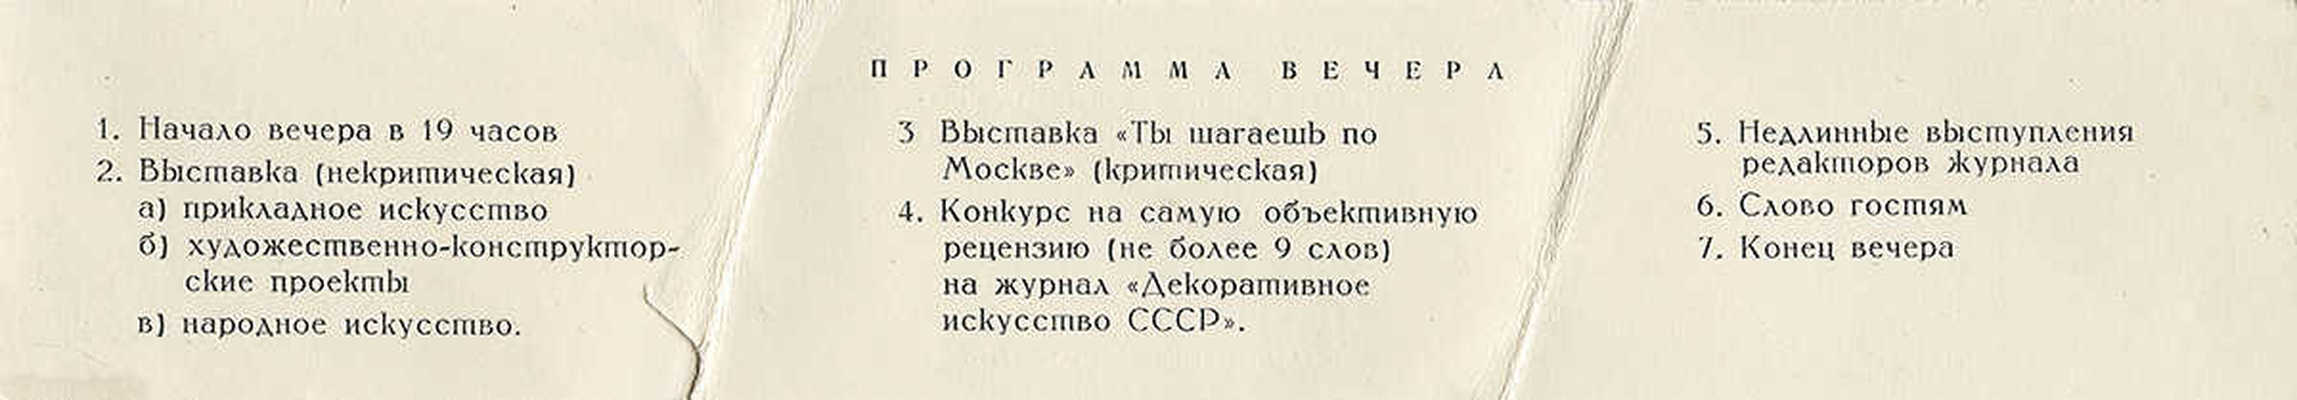 Пригласительный билет на вечер, посвященный выставке Союза архитекторов СССР. М., 1966.